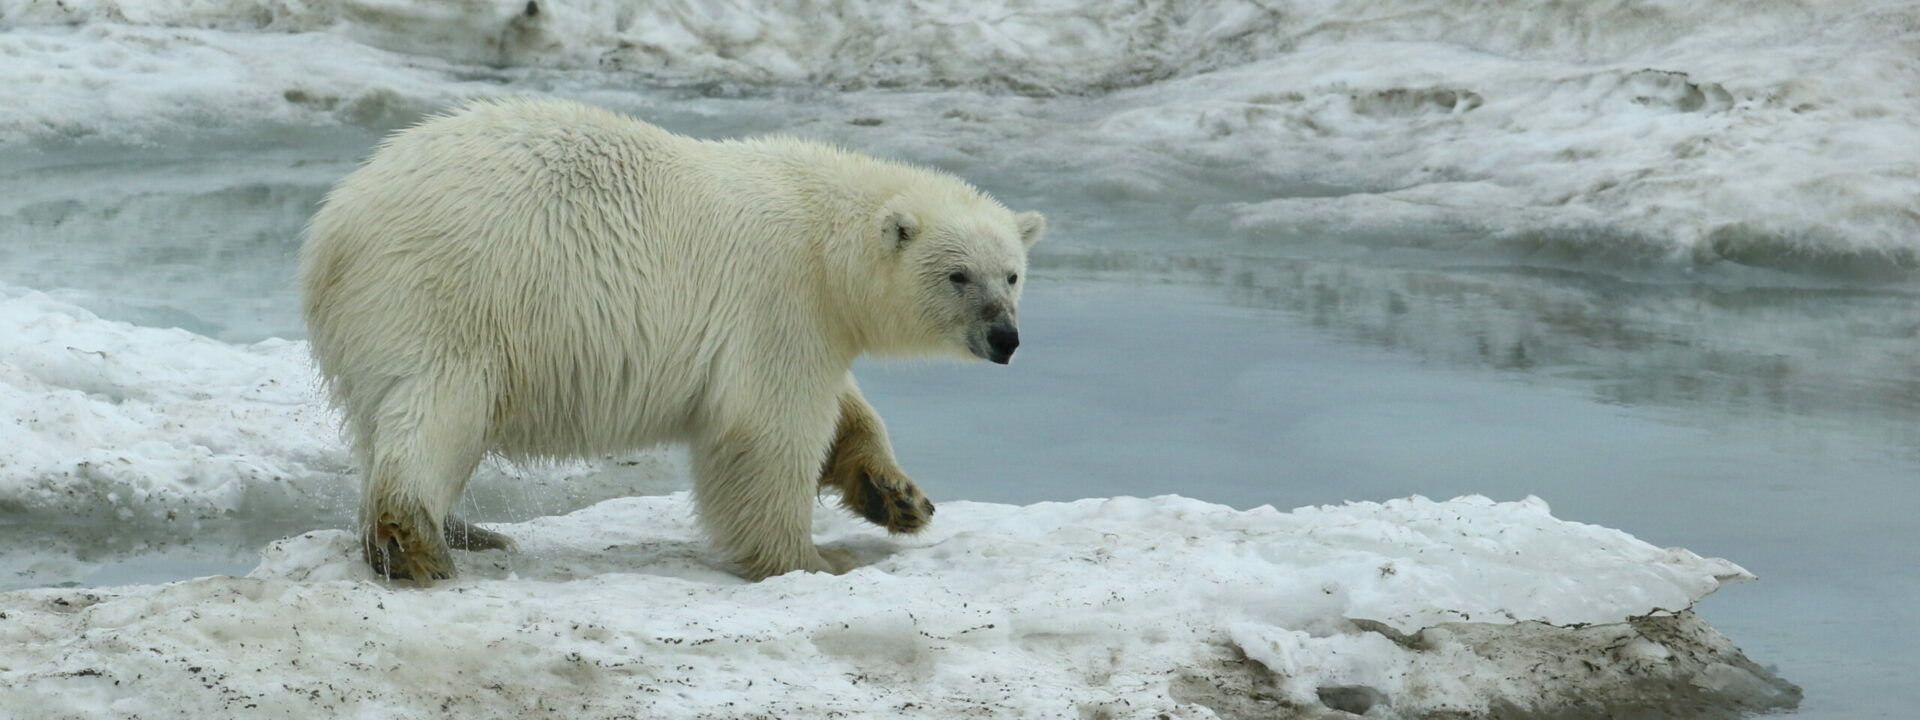 Polar Bear on the sea ice © Chris Collins